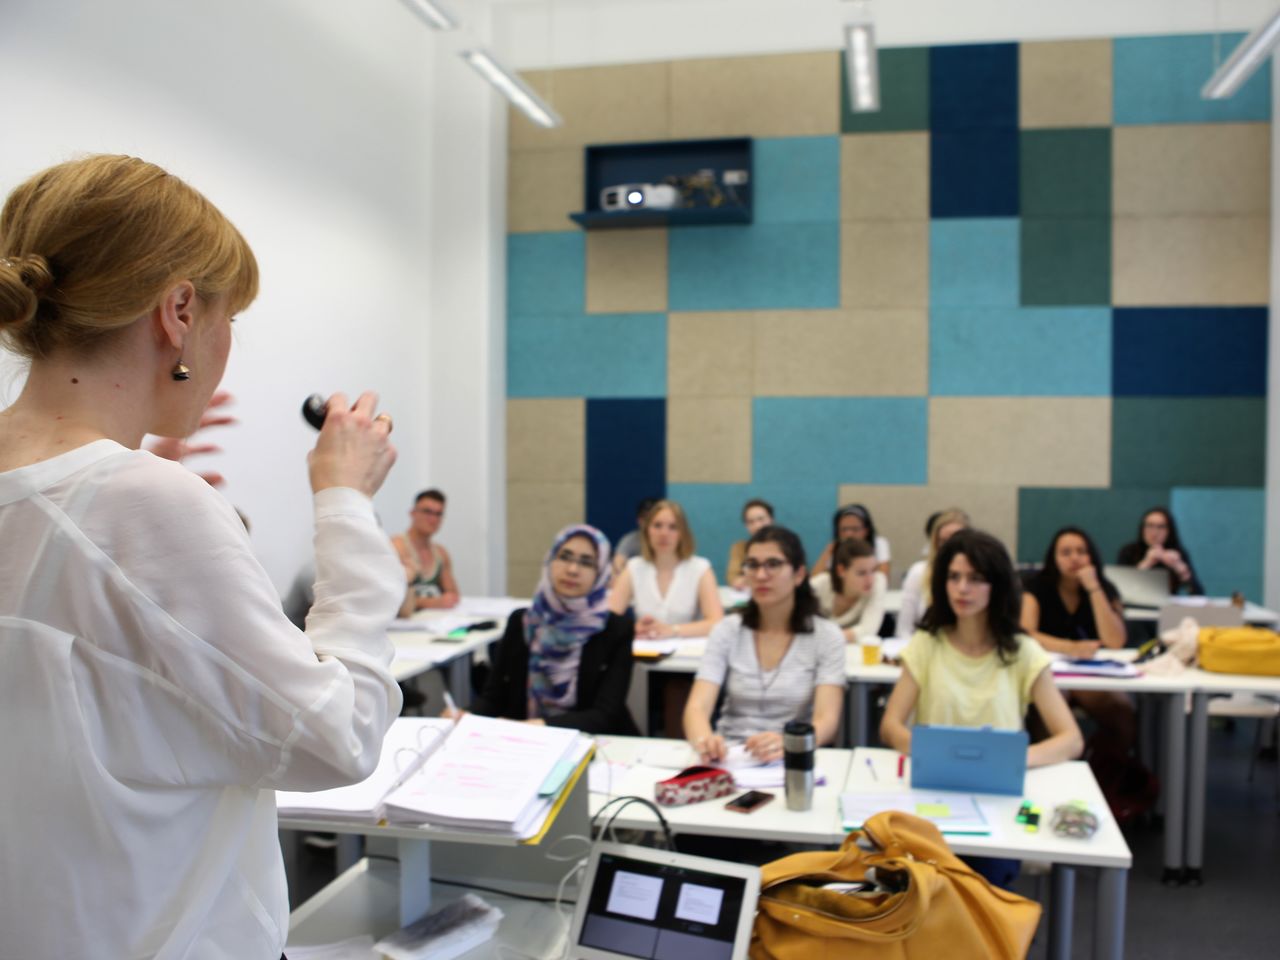 Eine Dozentin mit weißer Bluse und blonden zusammengebundenen Haaren spricht vor Studierenden im Seminarraum.